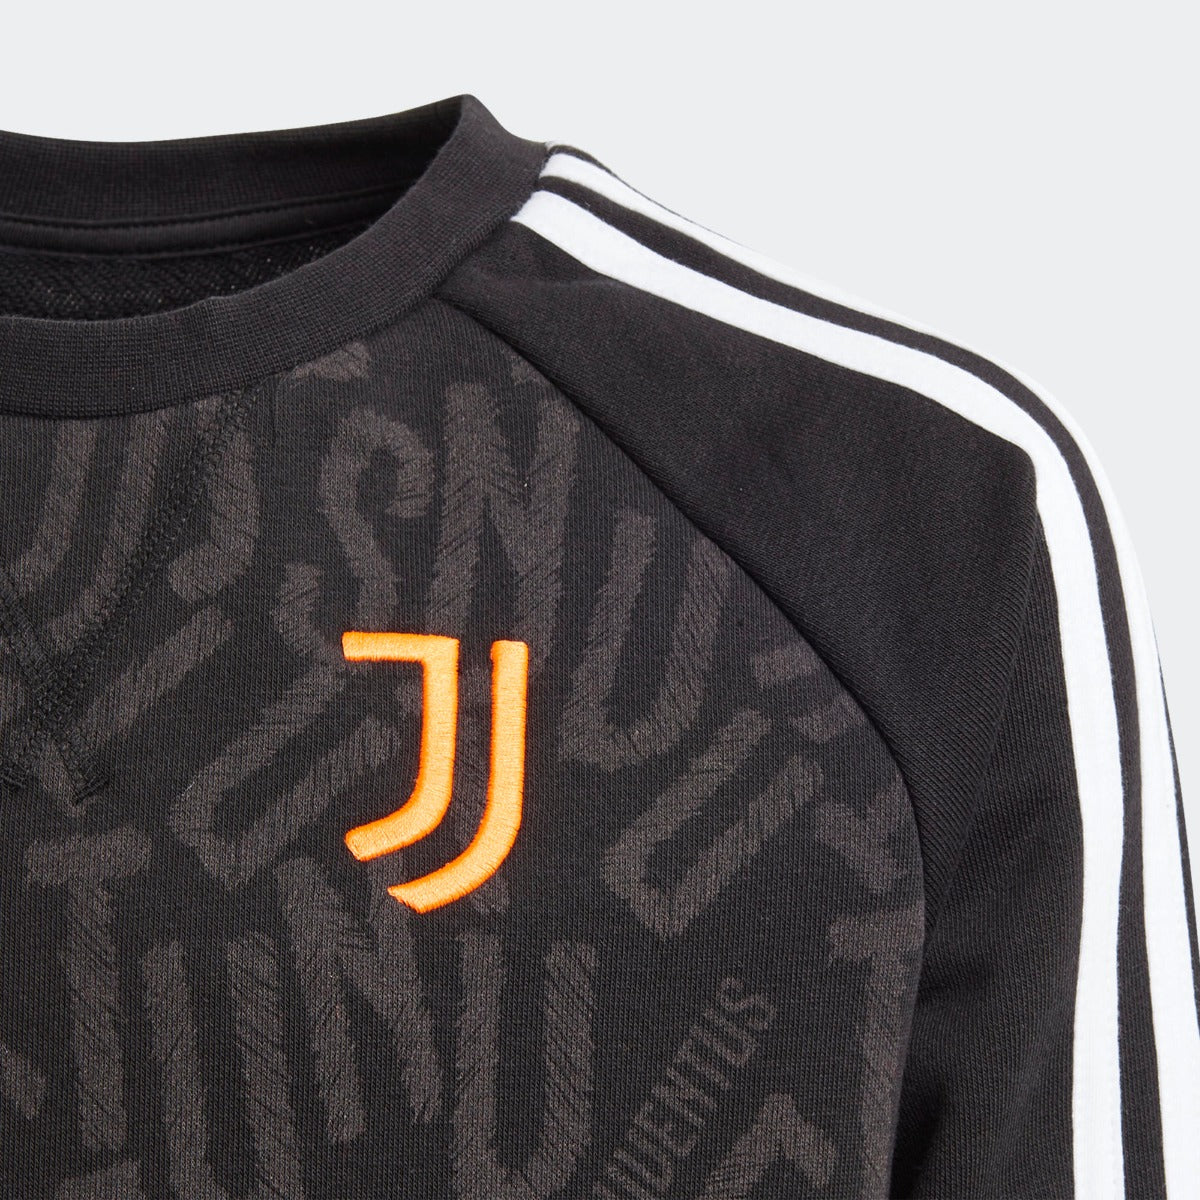 Adidas 2020-21 Juventus Youth Crewneck Sweater - Black-Orange